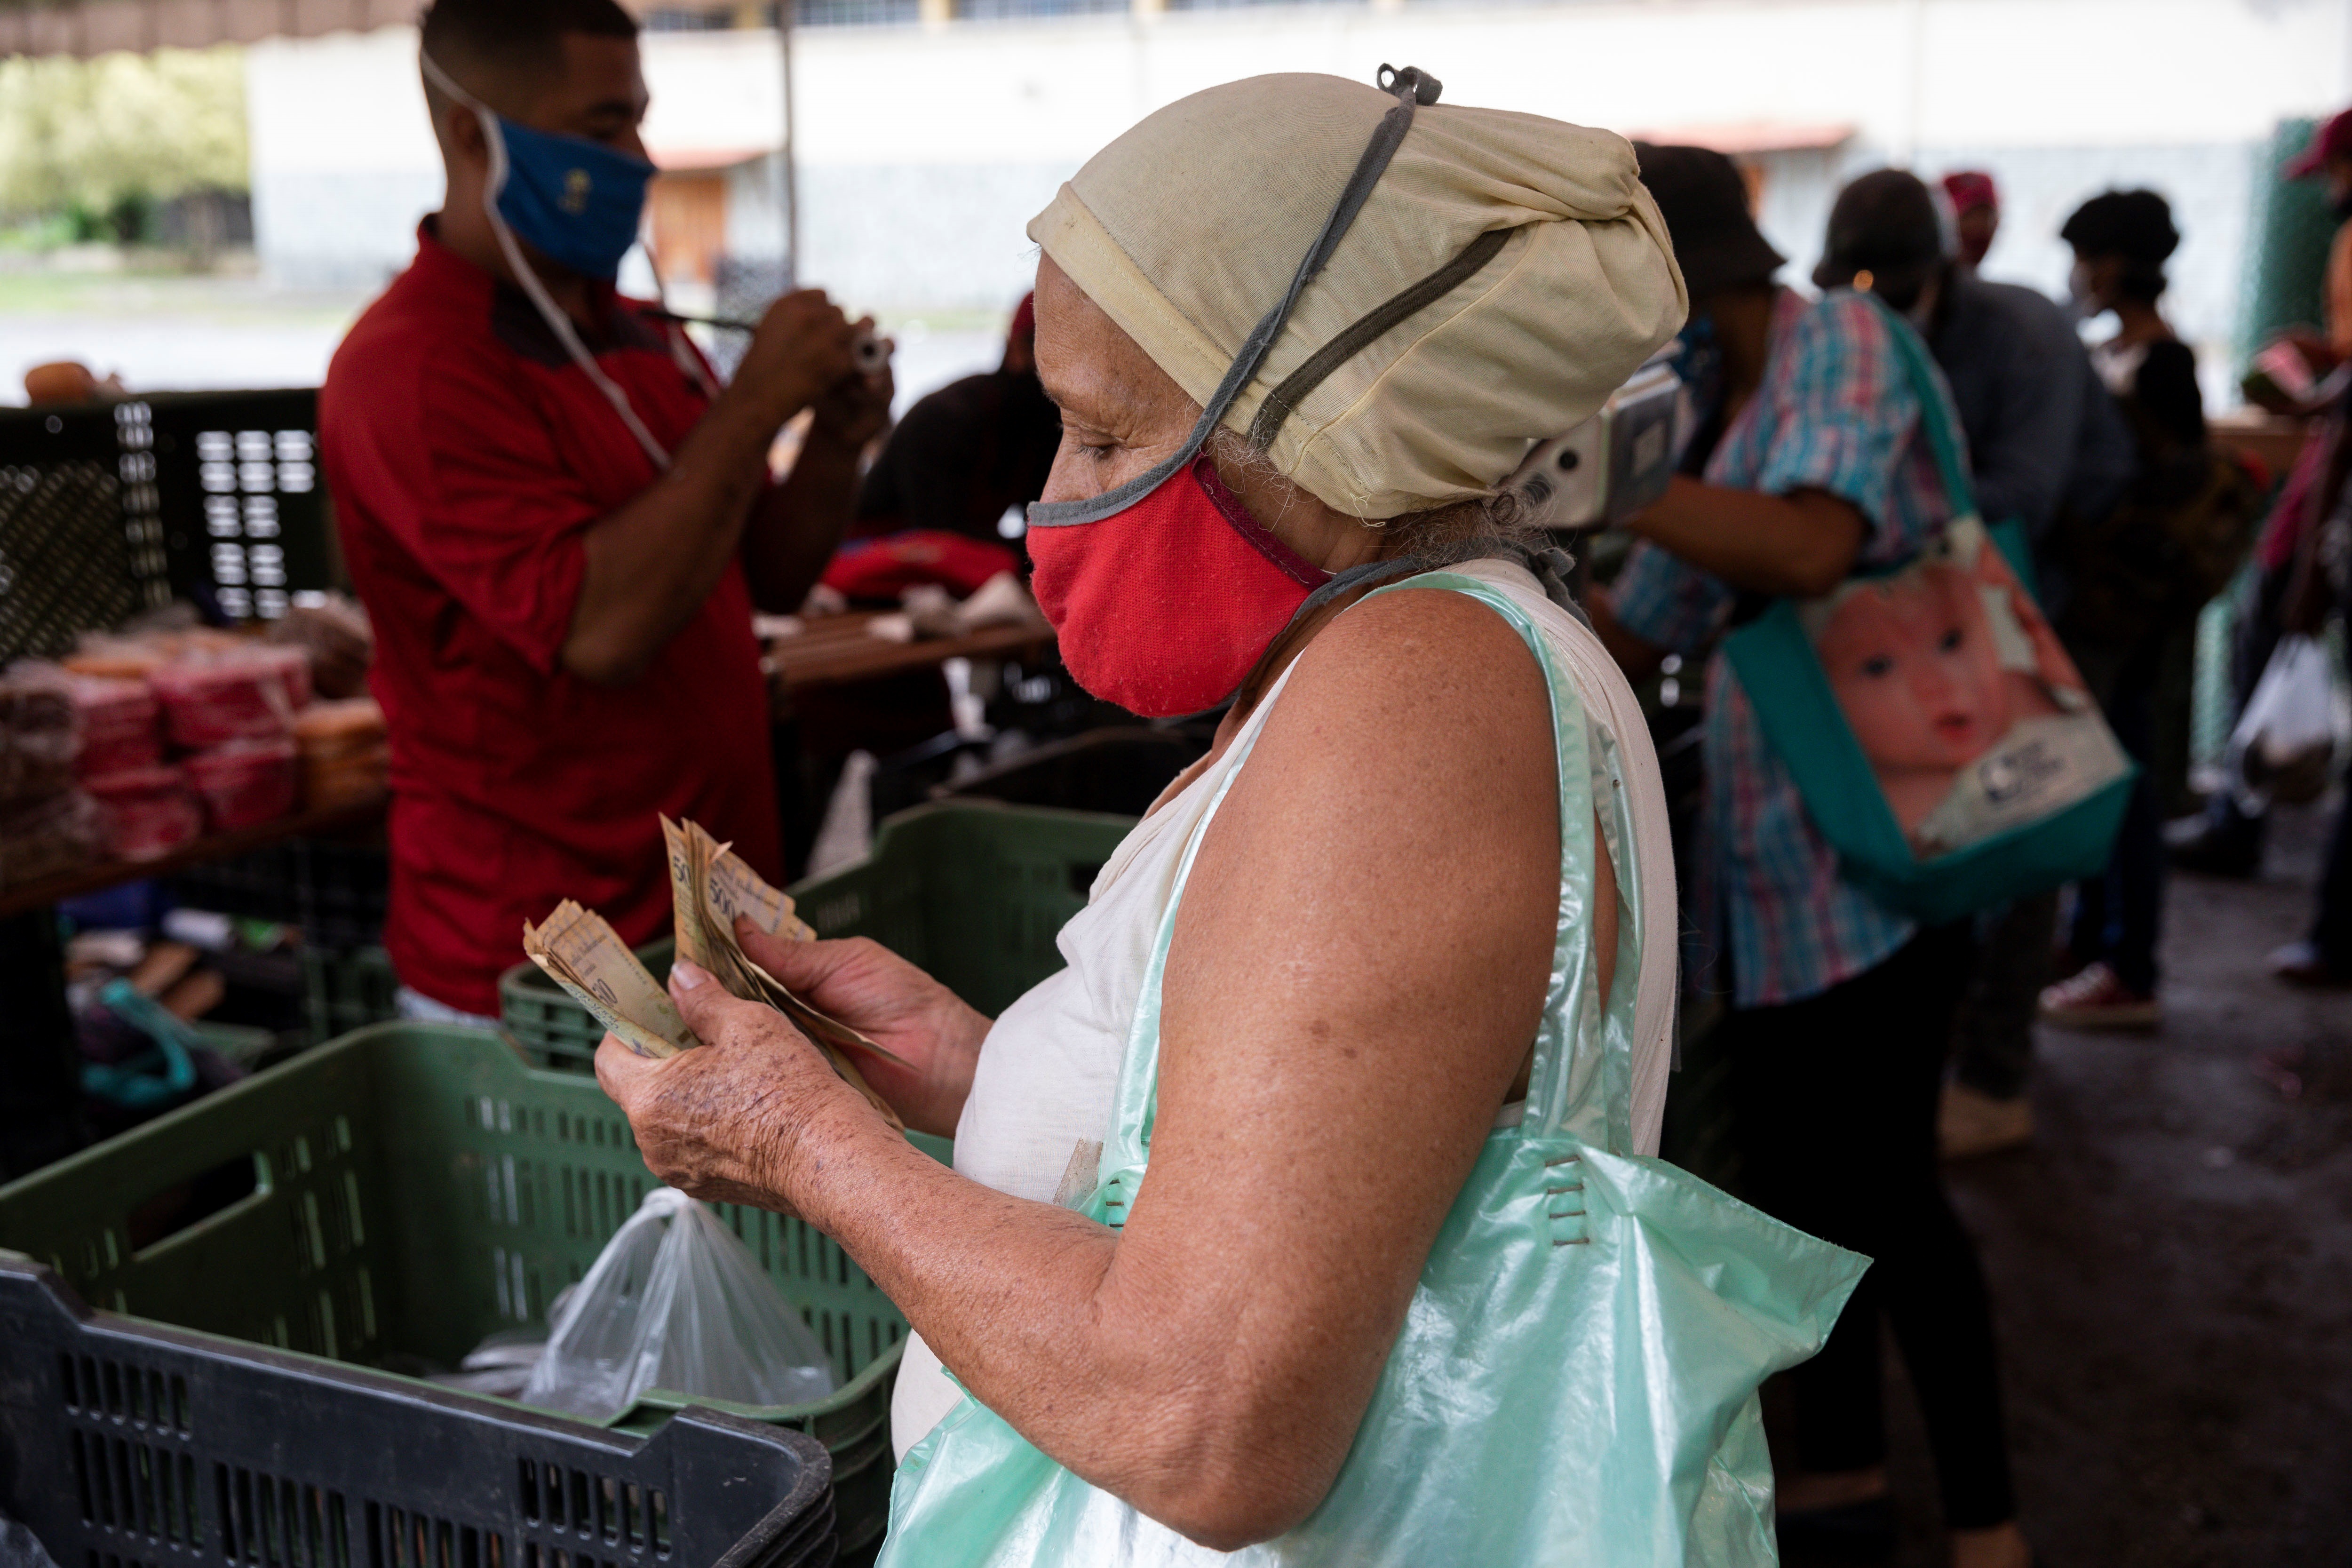 Salario integral en Venezuela solo sirve para gastarlo en uno o dos alimentos básicos